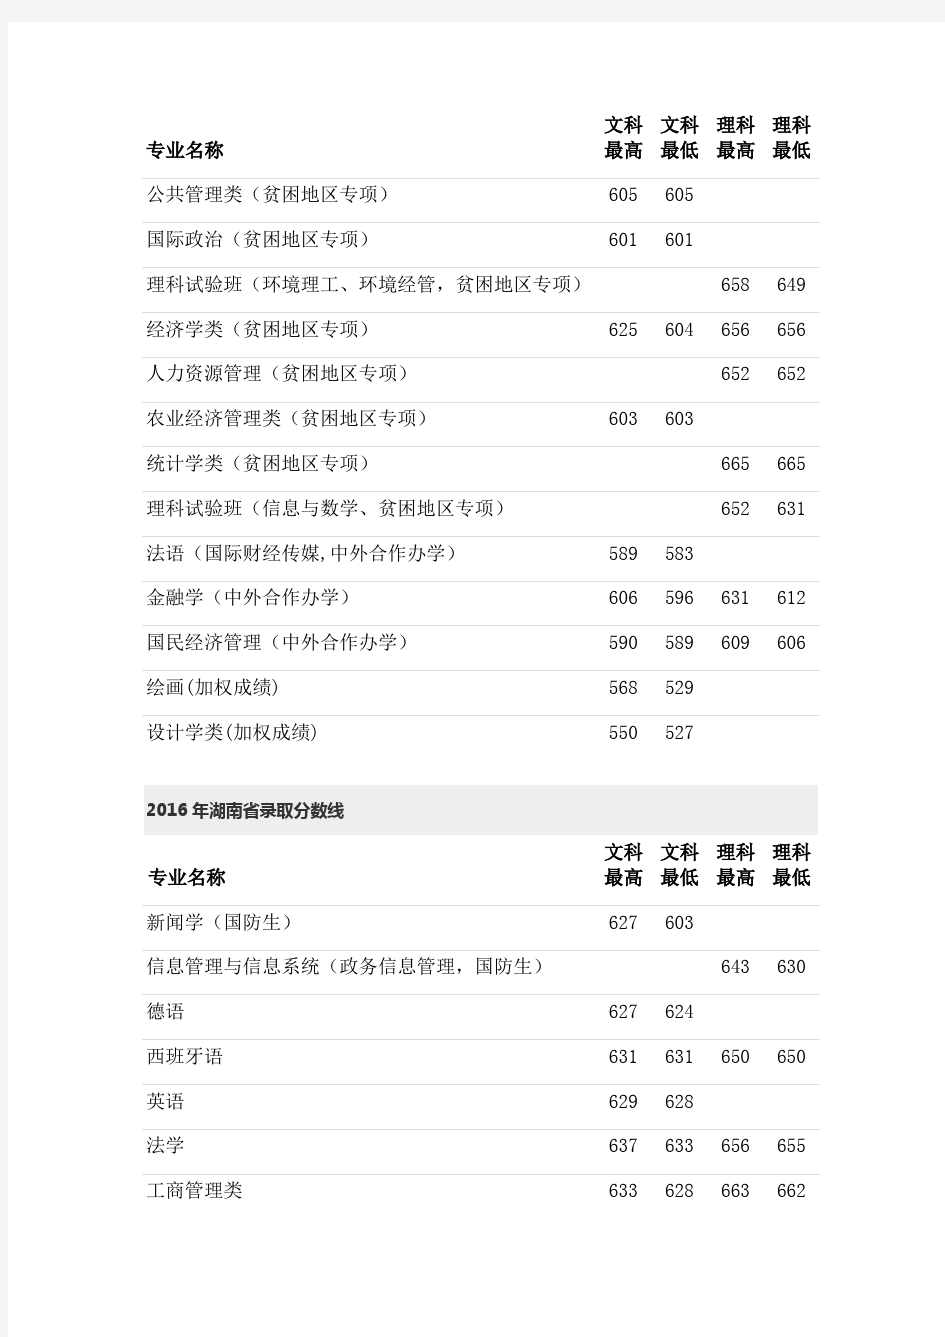 中国人民大学2015~2019年高考录取分数线统计(湖南省考生)